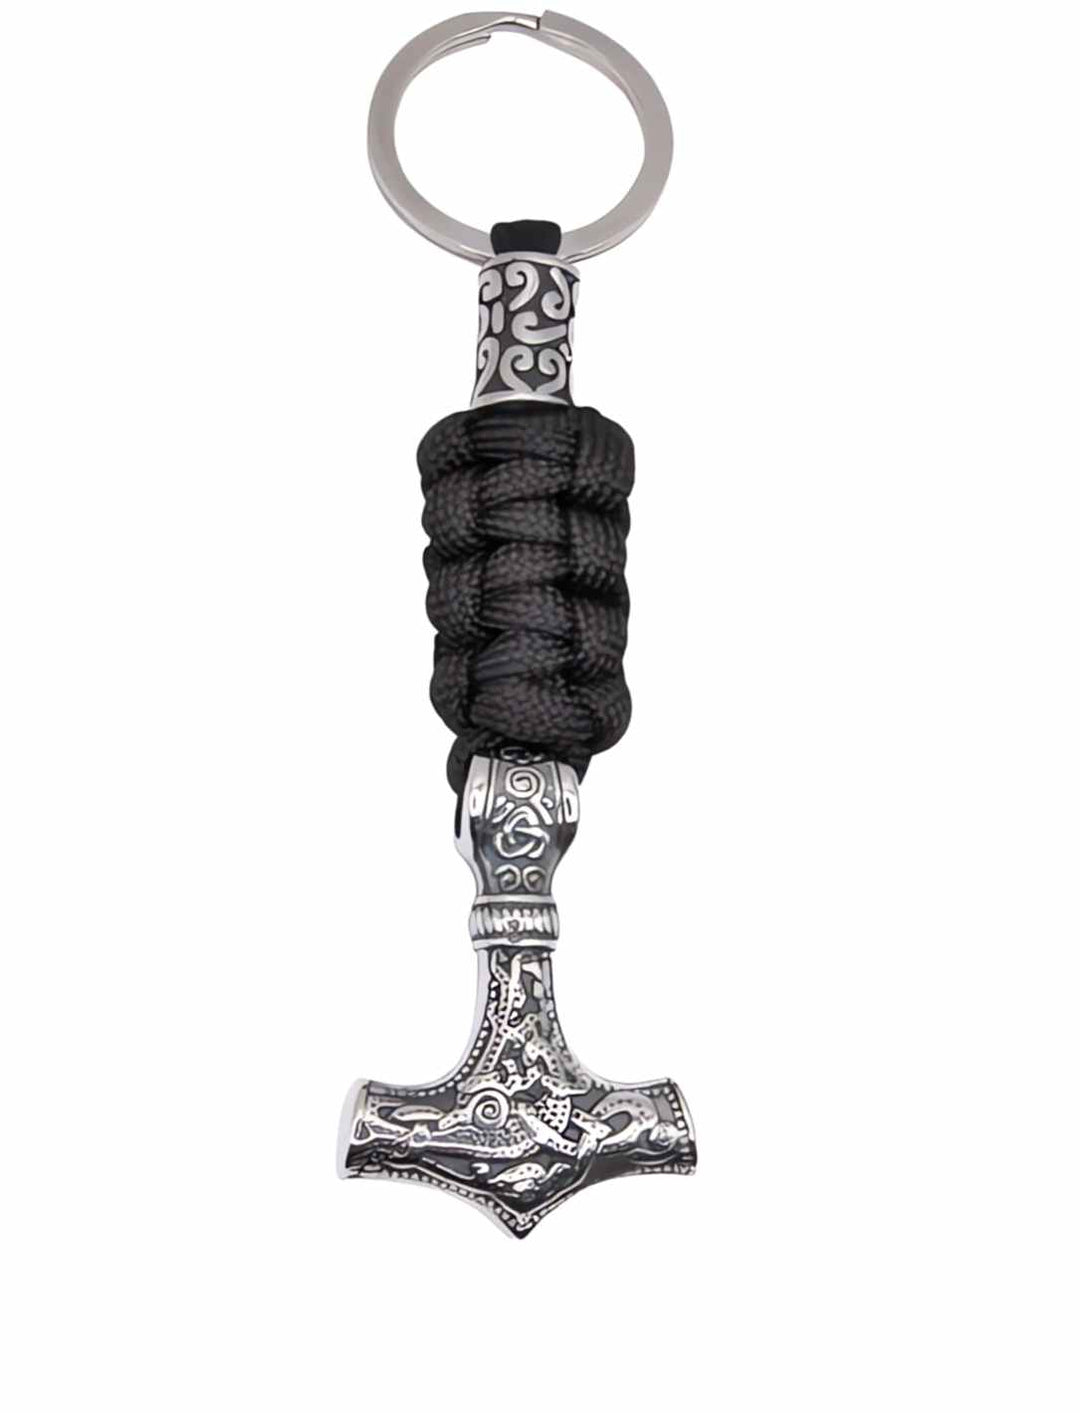 Thor's Hammer Schlüsselanhänger aus Edelstahl mit Stoffband auf Weiß – Symbol nordischer Stärke bei Runental.de.